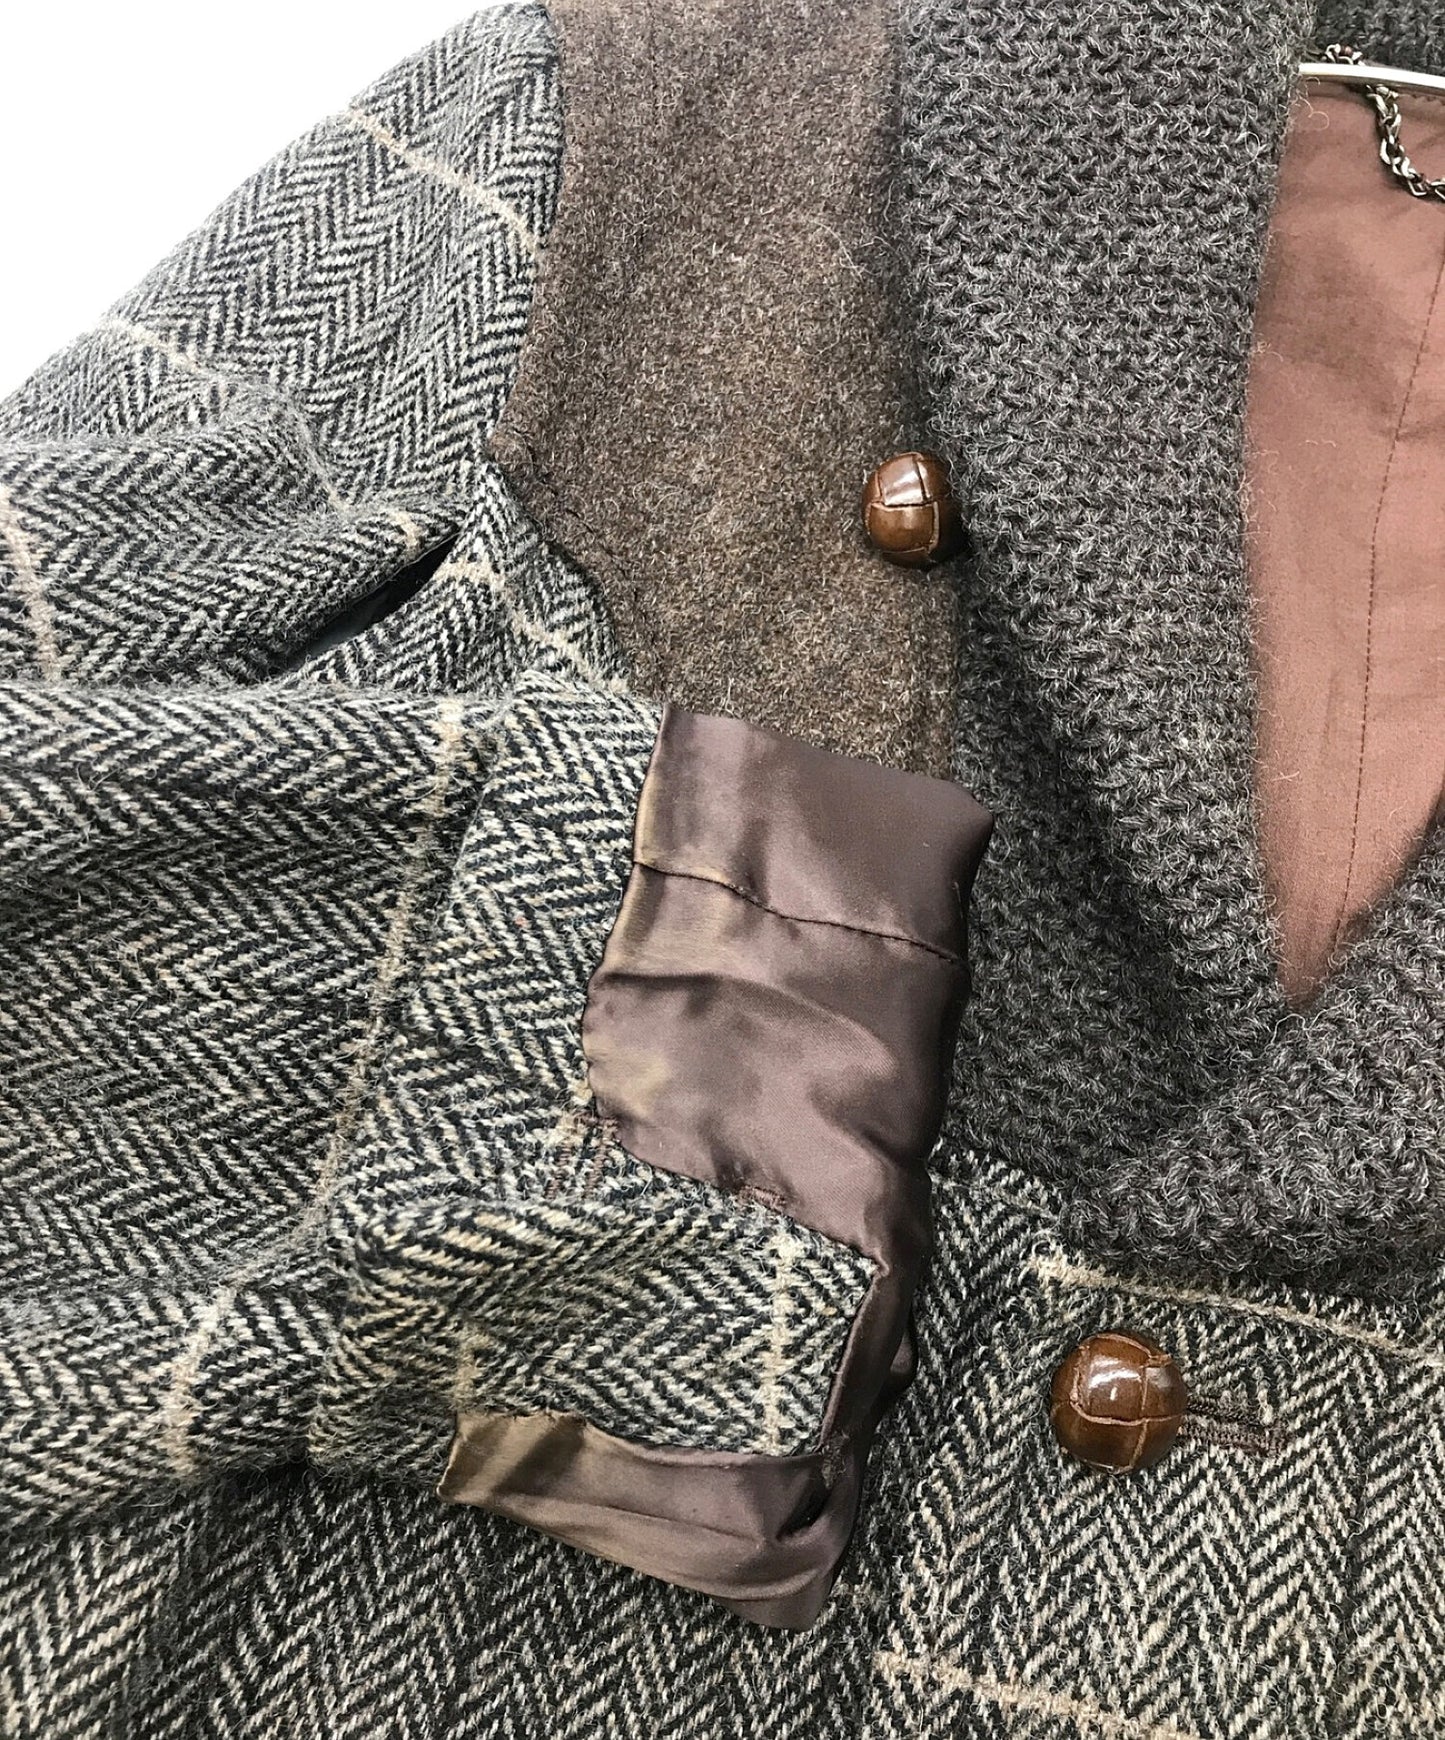 [Pre-owned] NUMBER (N)INE 02AW"GEORGE" period Herringbone Tweed Jacket